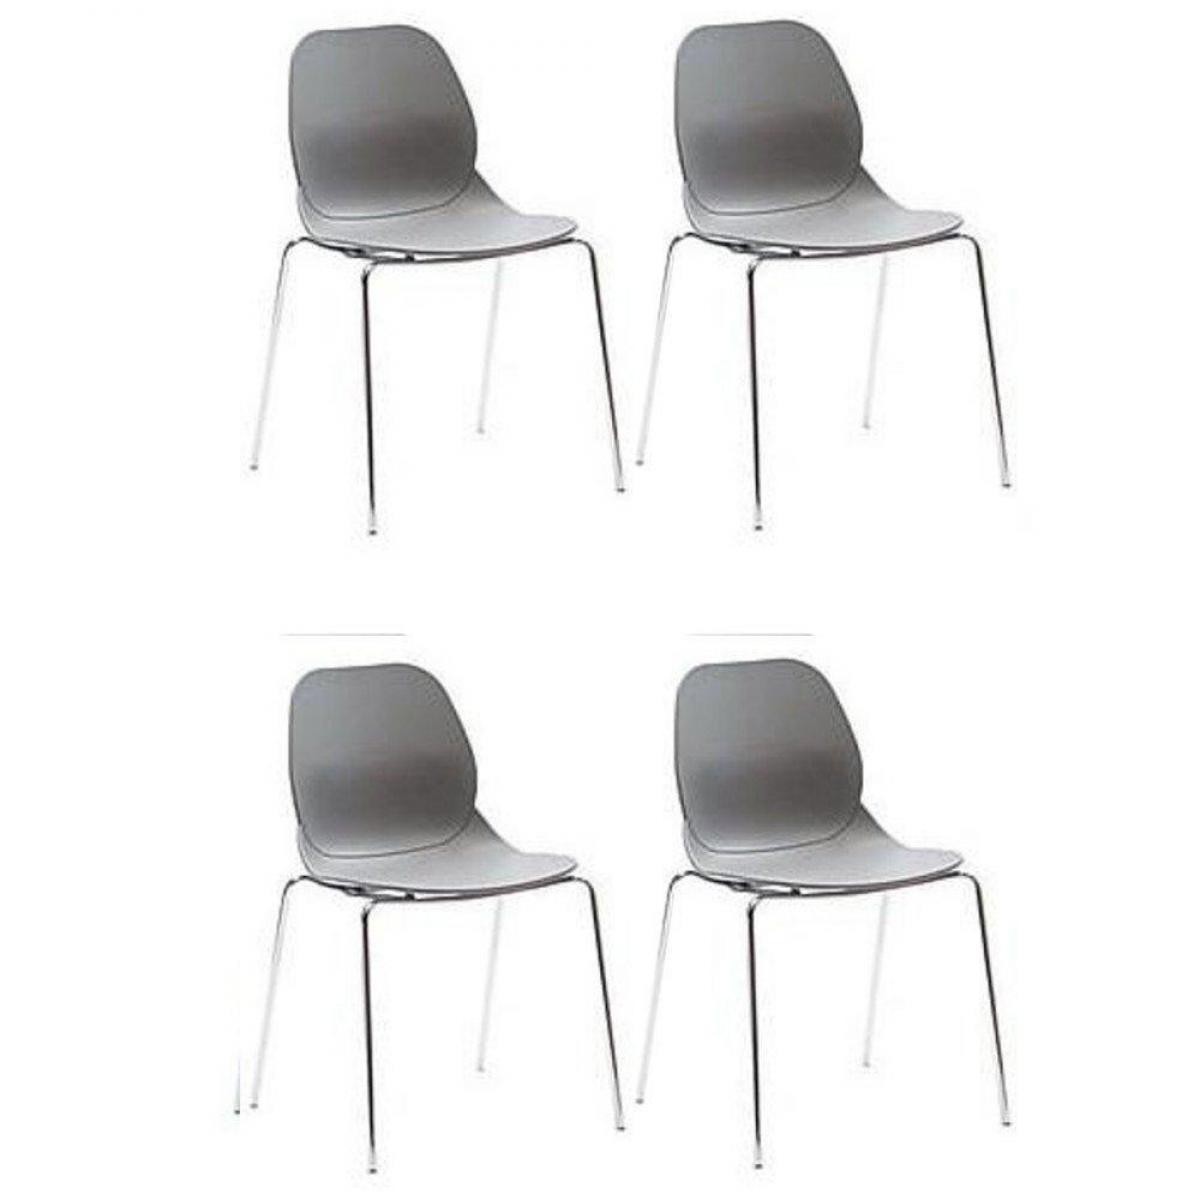 Inside 75 - Lot de 4 chaises SHELL METAL design gris - Chaises